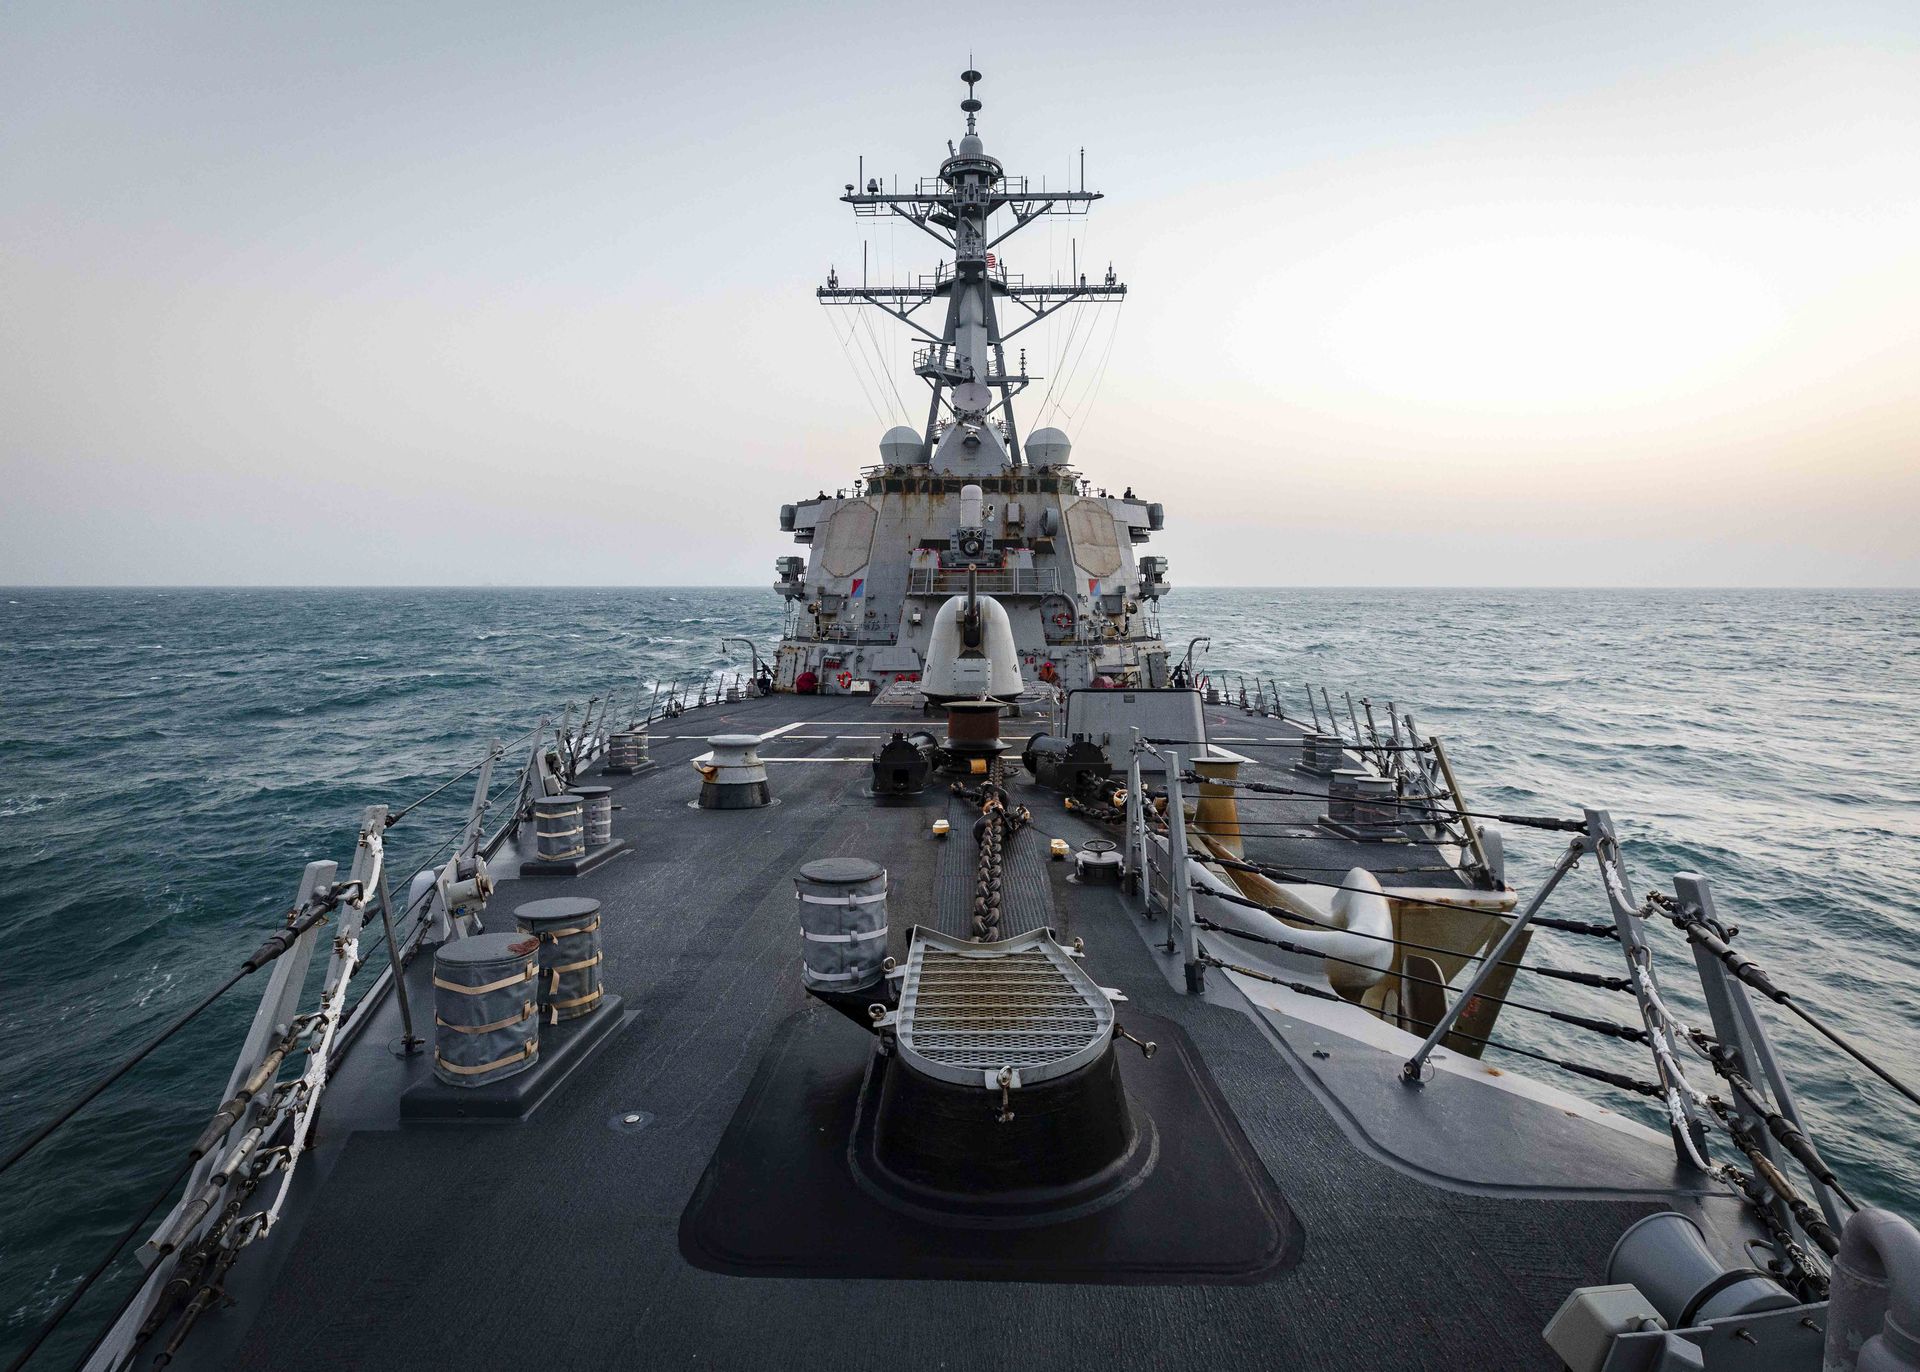 美军舰过航台湾海峡解放军东部战区强硬表态 多维新闻 中国